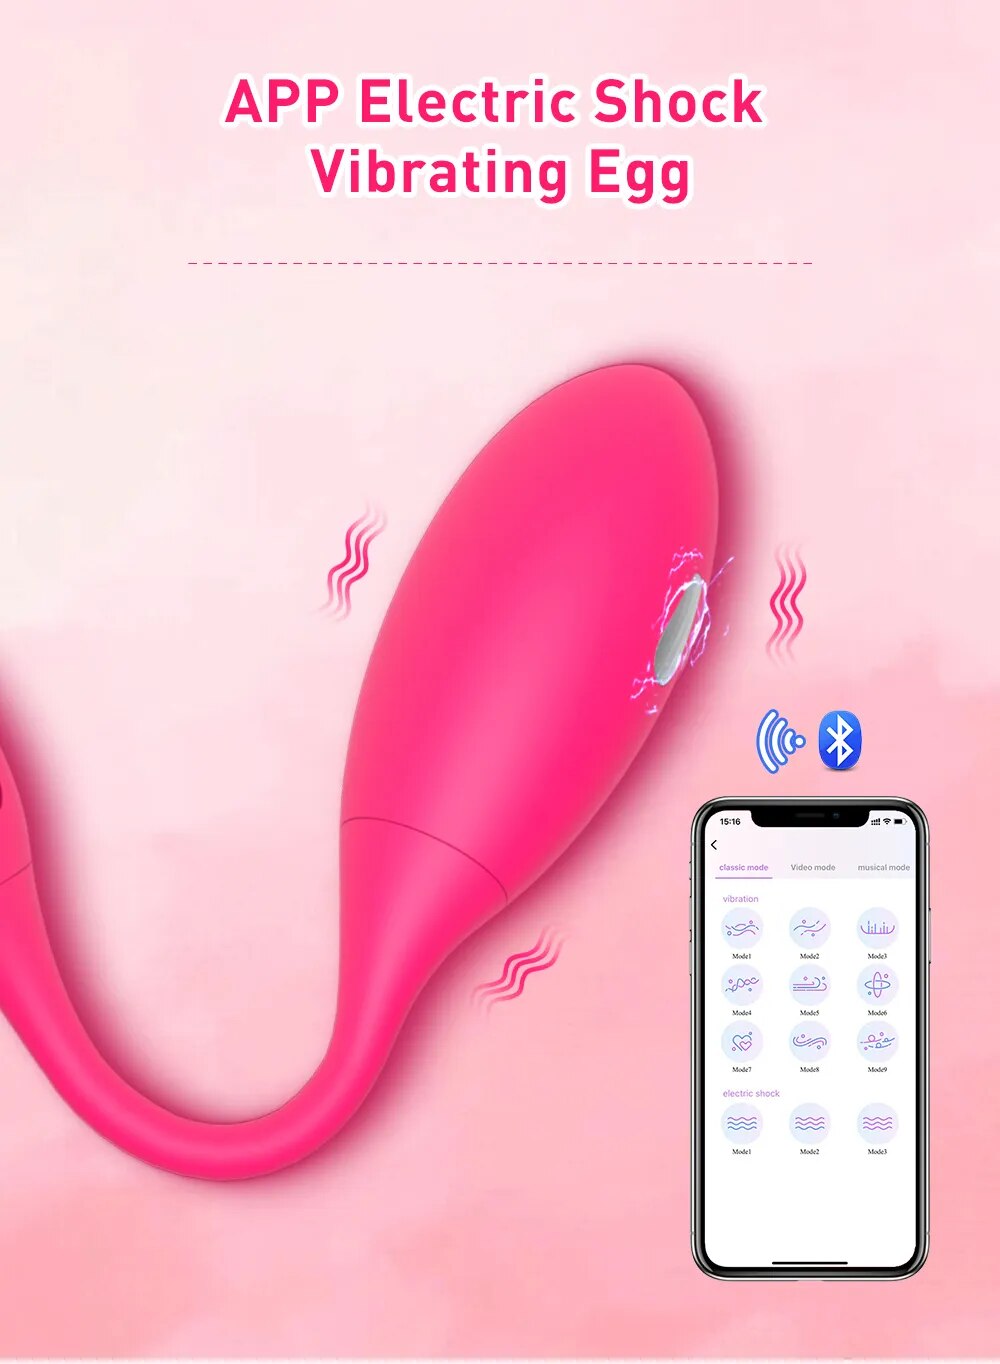 Đánh giá Trứng rung sốc điện Levett điều khiển từ xa qua app bluetooth giá rẻ